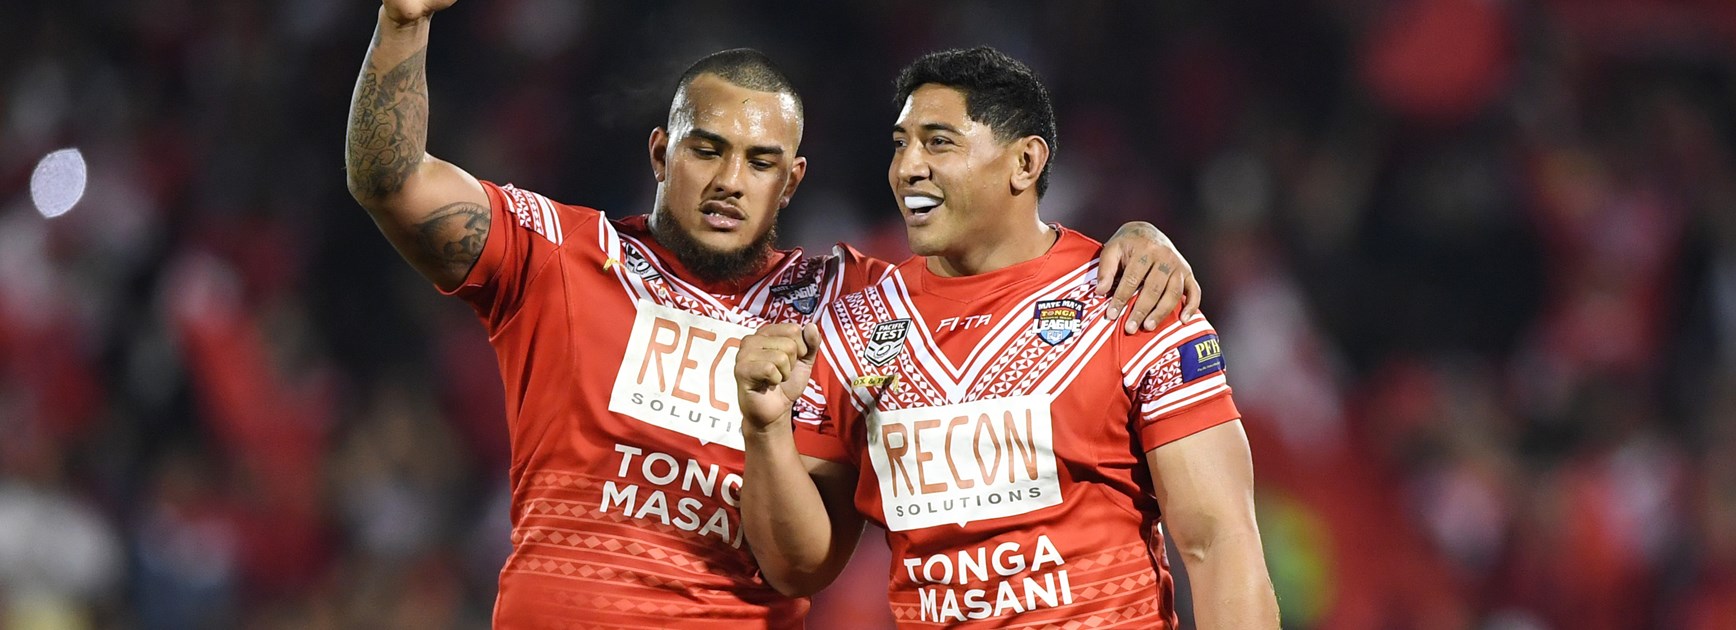 Addin Fonua-Blake (left) and Tongan teammate Jason Taumaulolo after beating Samoa in 2018.